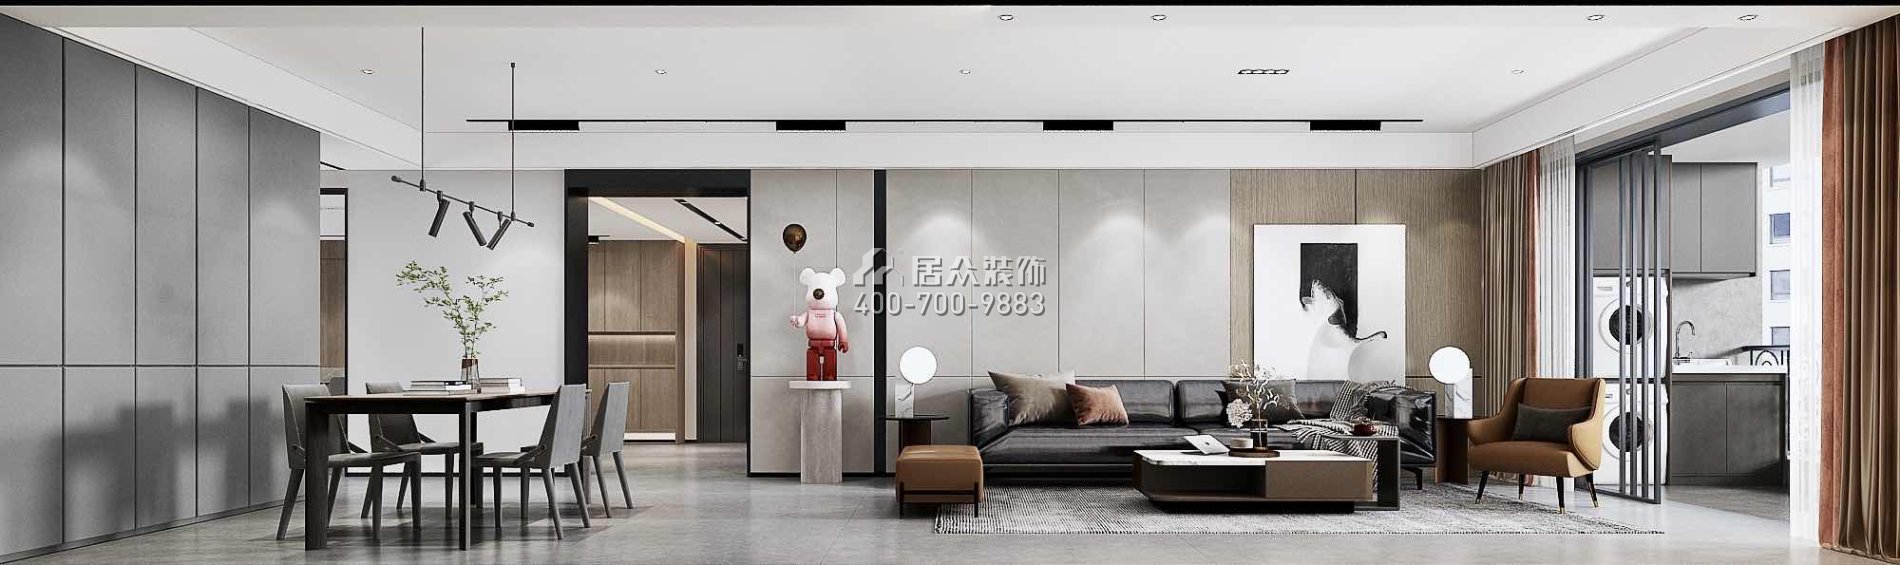 南海玫瑰园三期180平方米现代简约风格平层户型客厅装修效果图